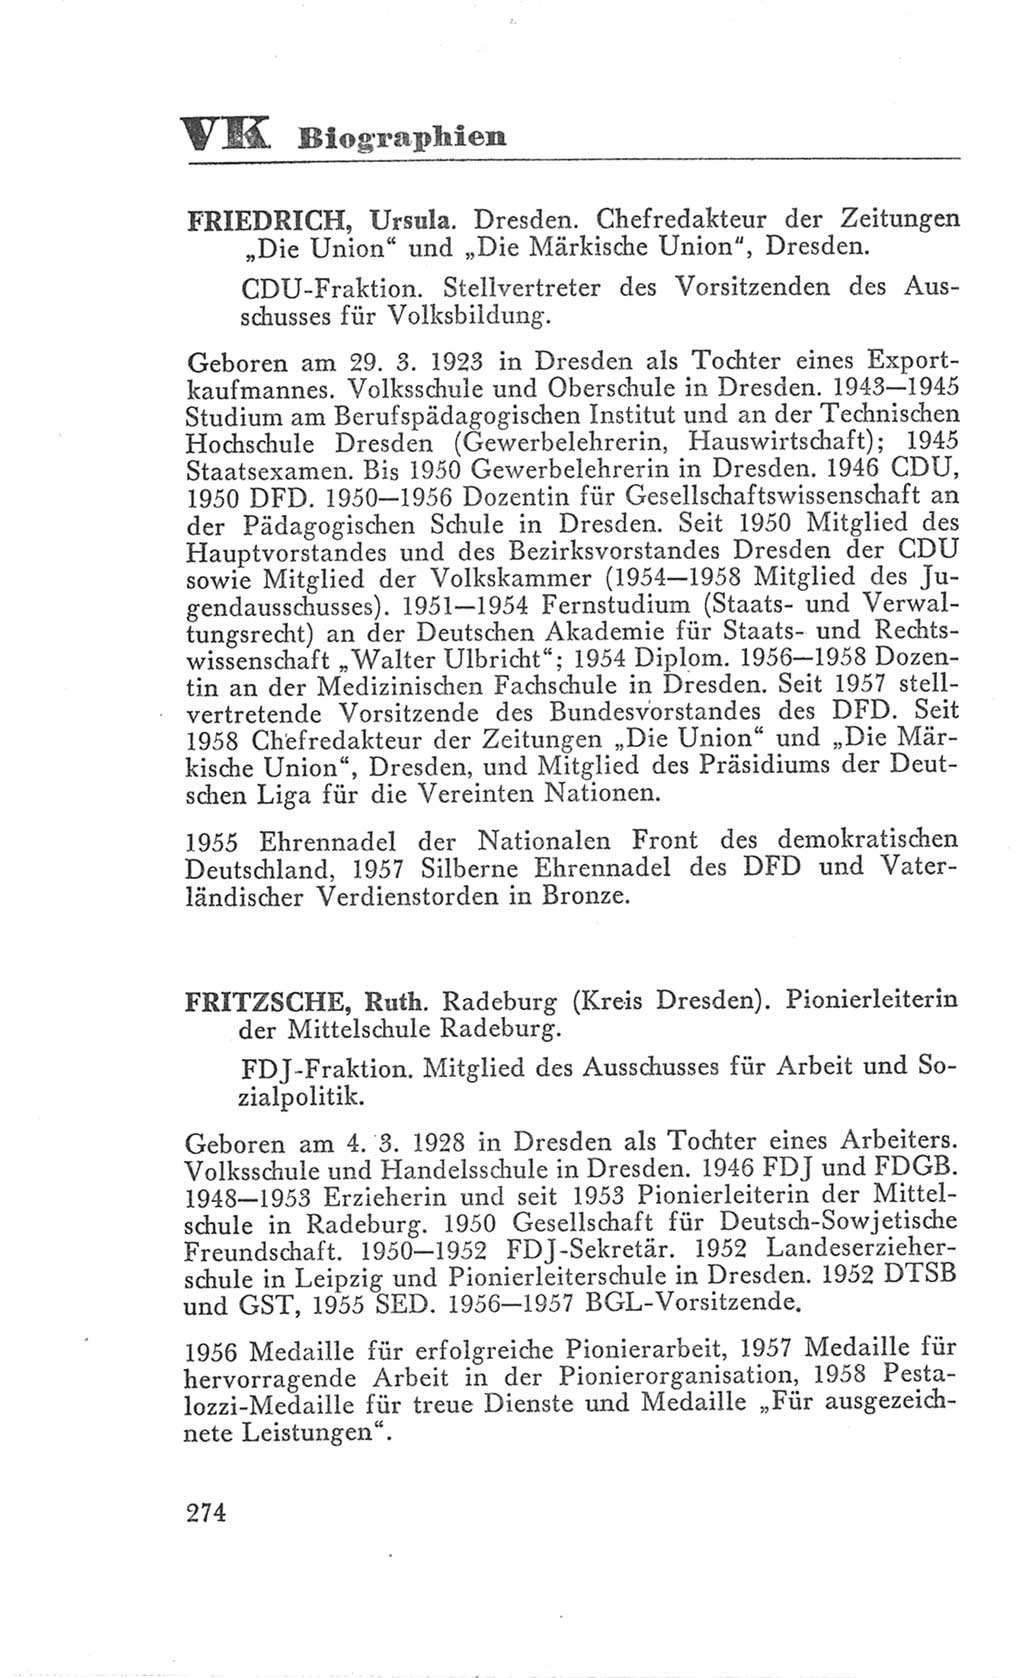 Handbuch der Volkskammer (VK) der Deutschen Demokratischen Republik (DDR), 3. Wahlperiode 1958-1963, Seite 274 (Hdb. VK. DDR 3. WP. 1958-1963, S. 274)